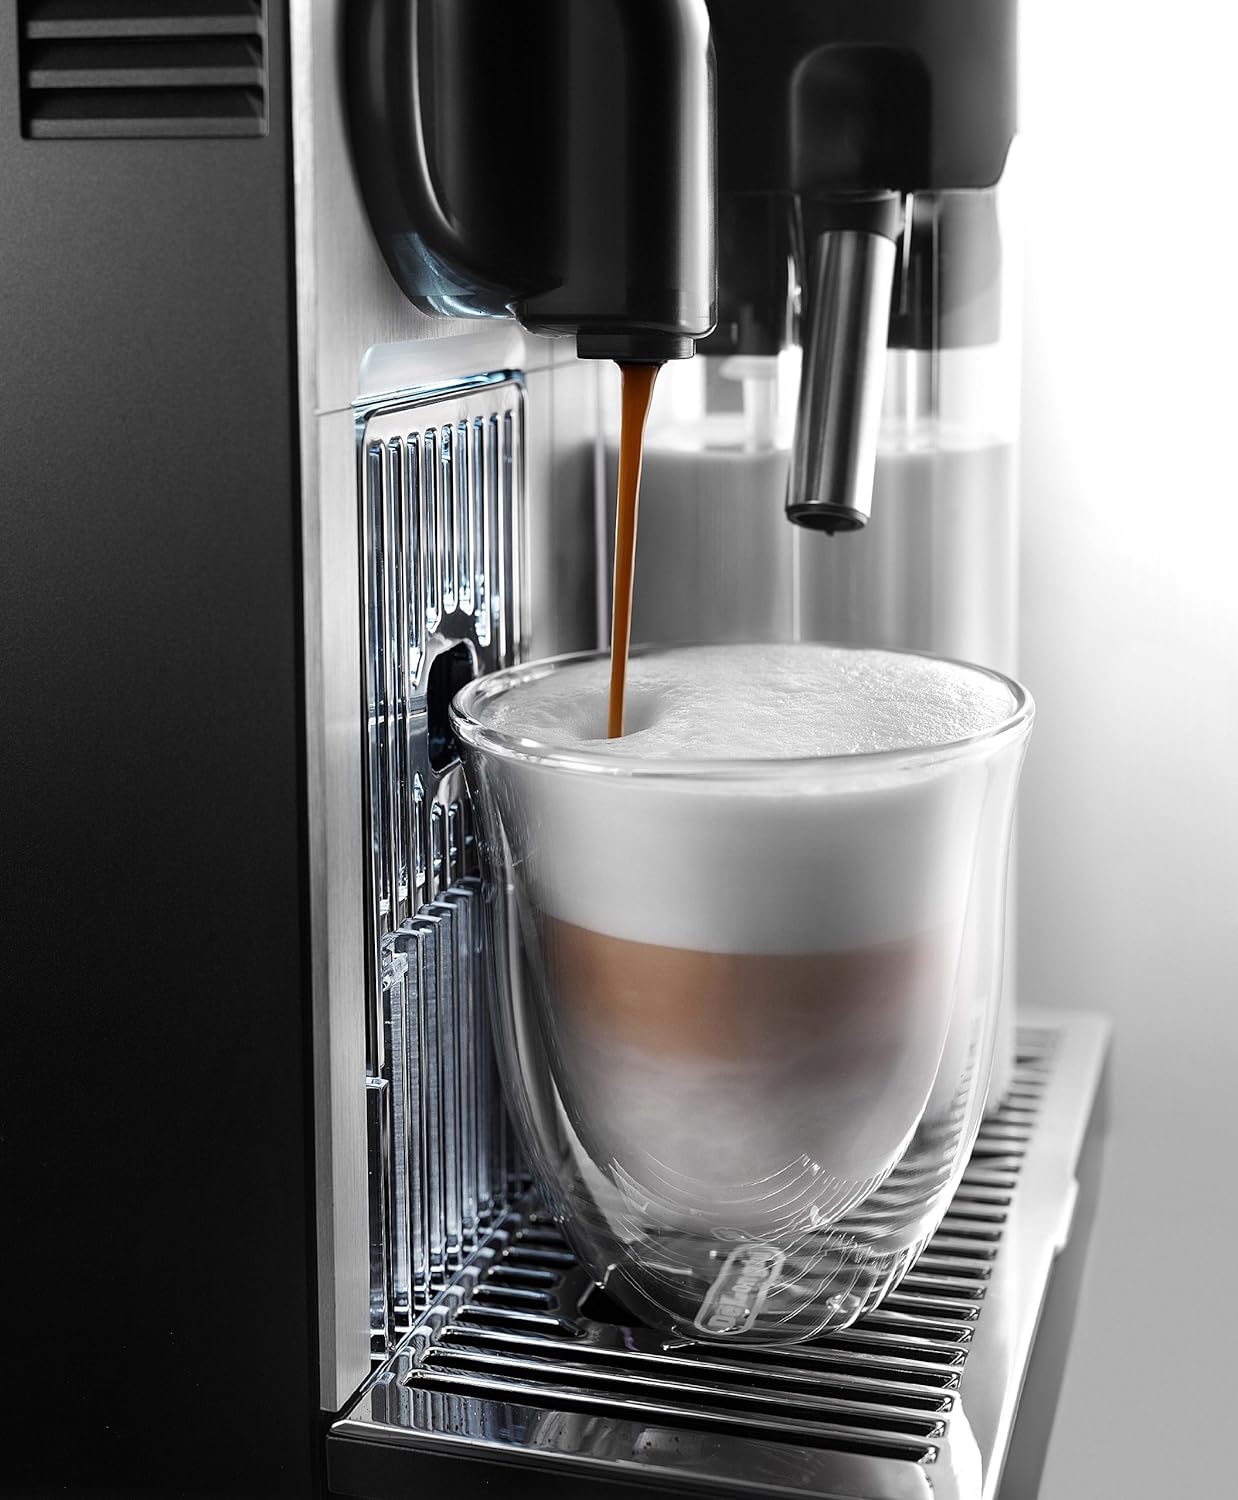 Nespresso Lattissima Pro Espresso Machine Review